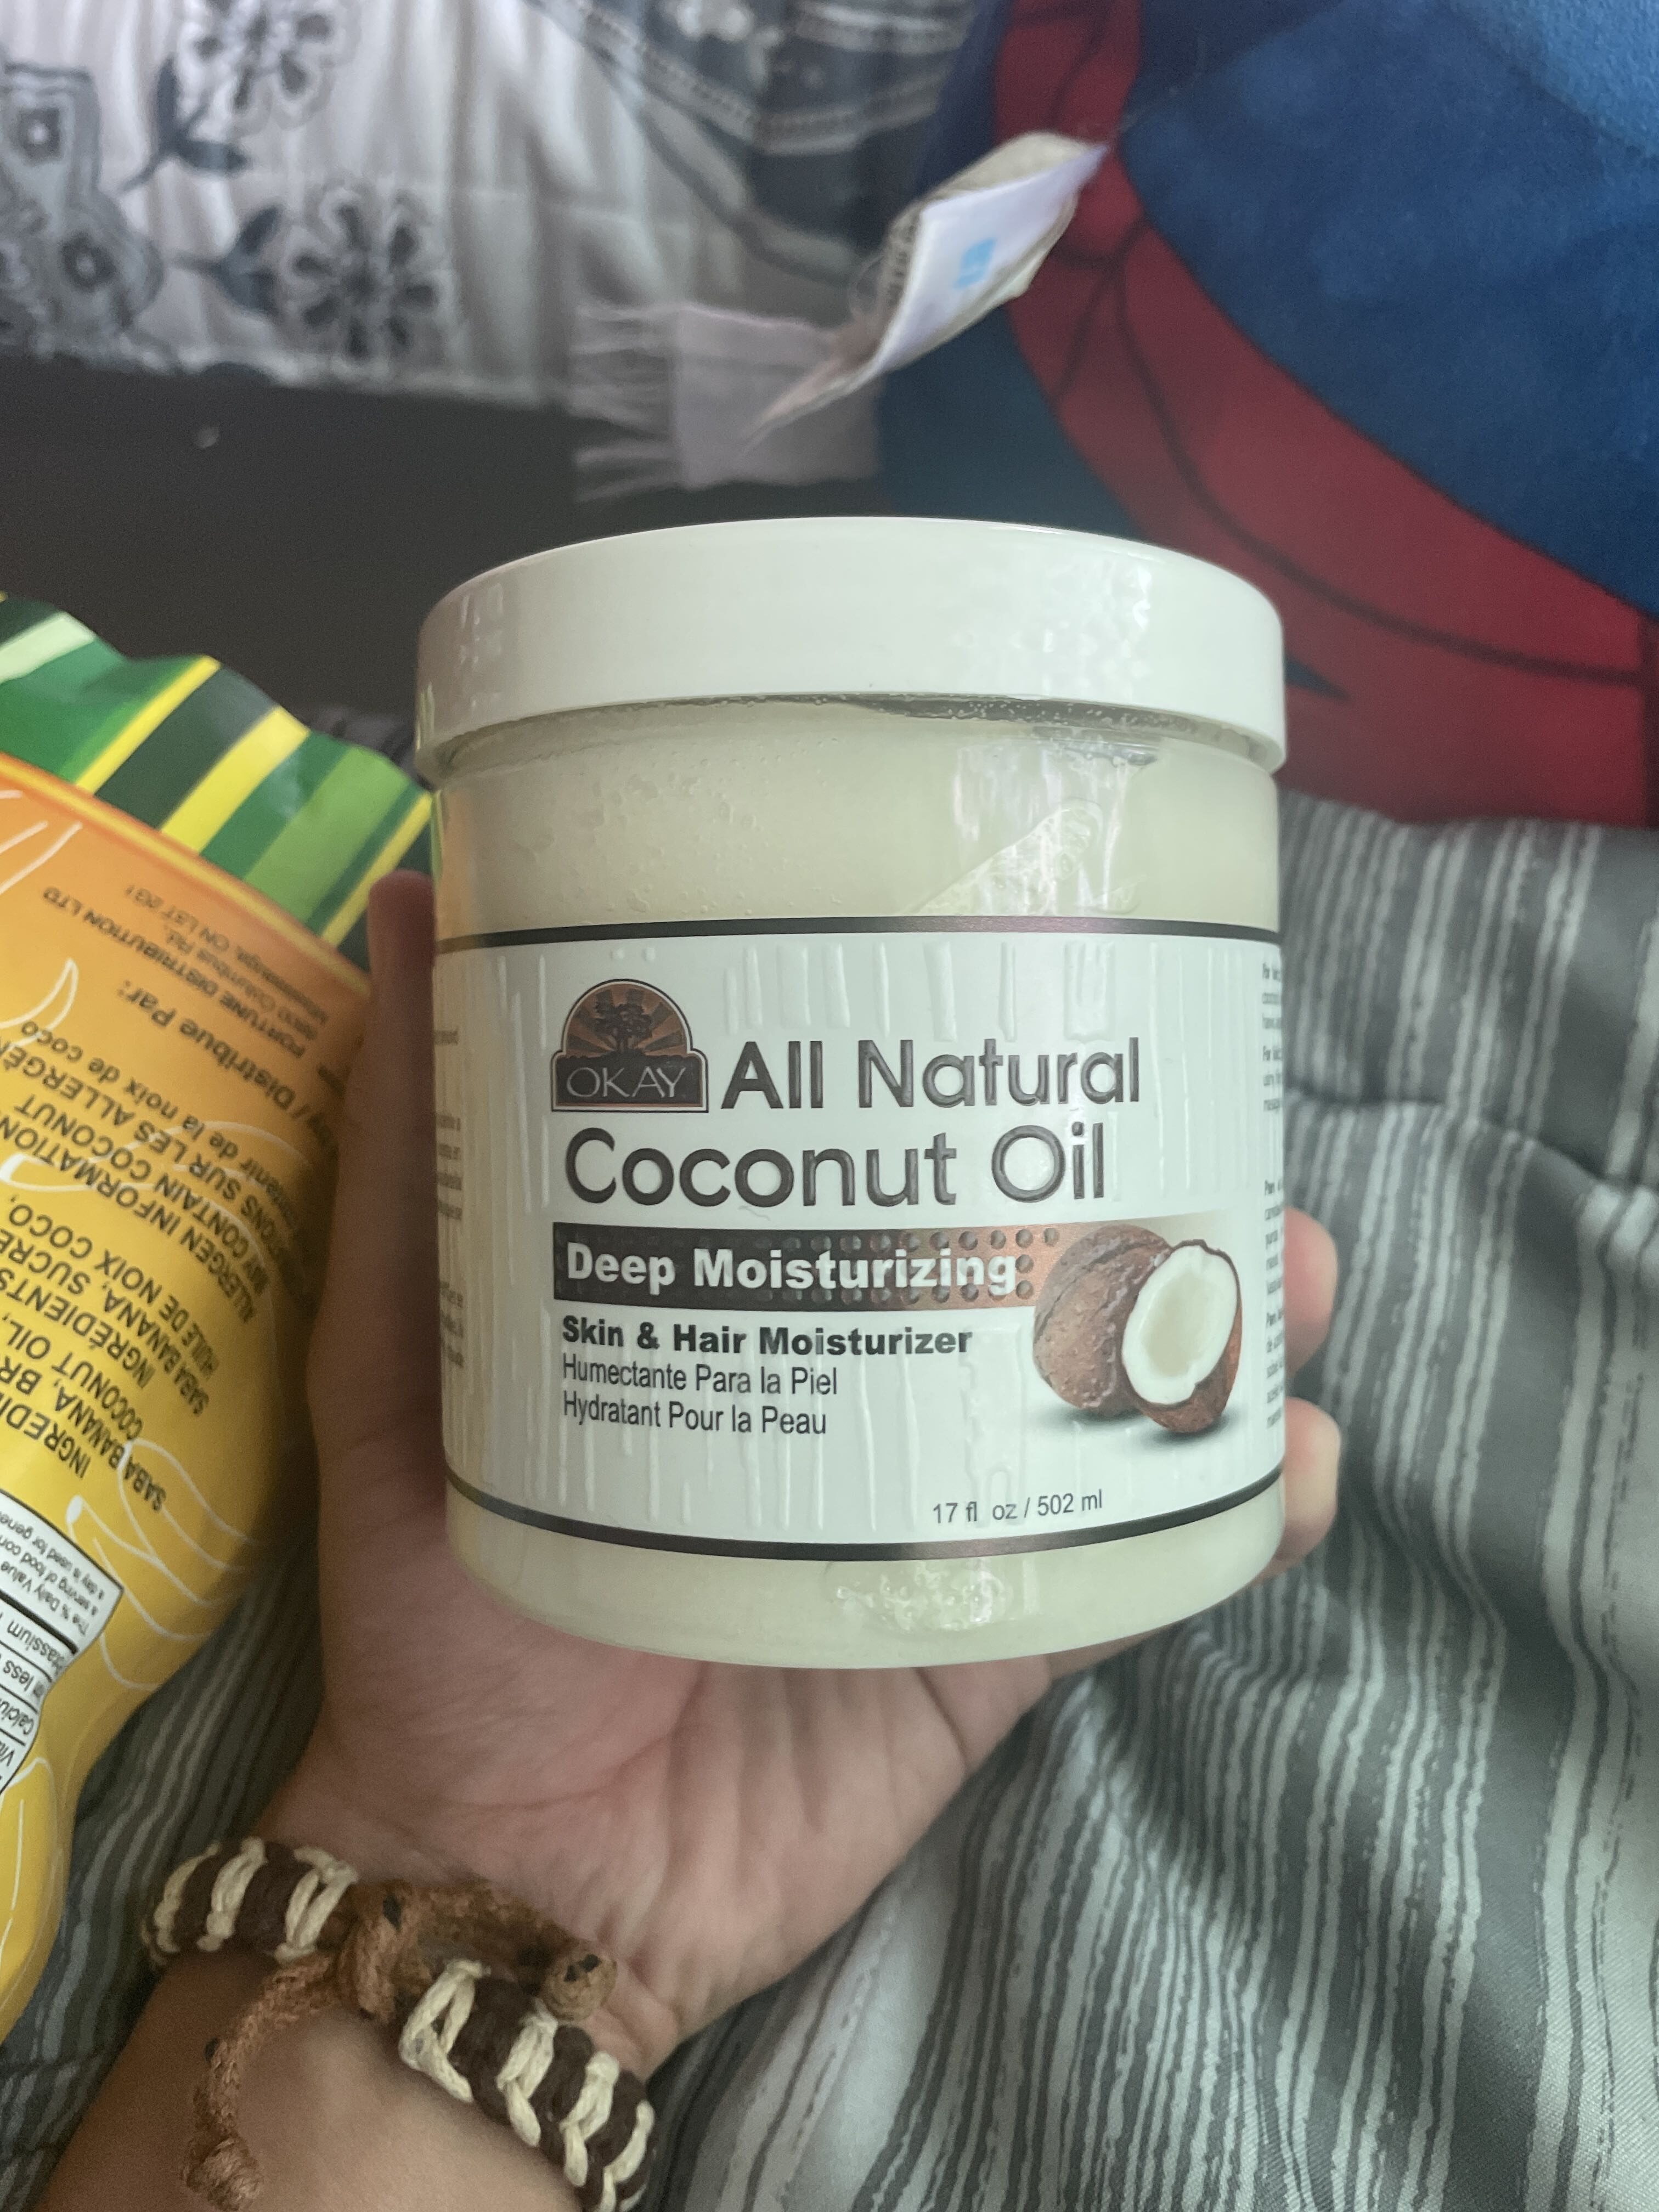 All natural coconut oil - Produkt - en